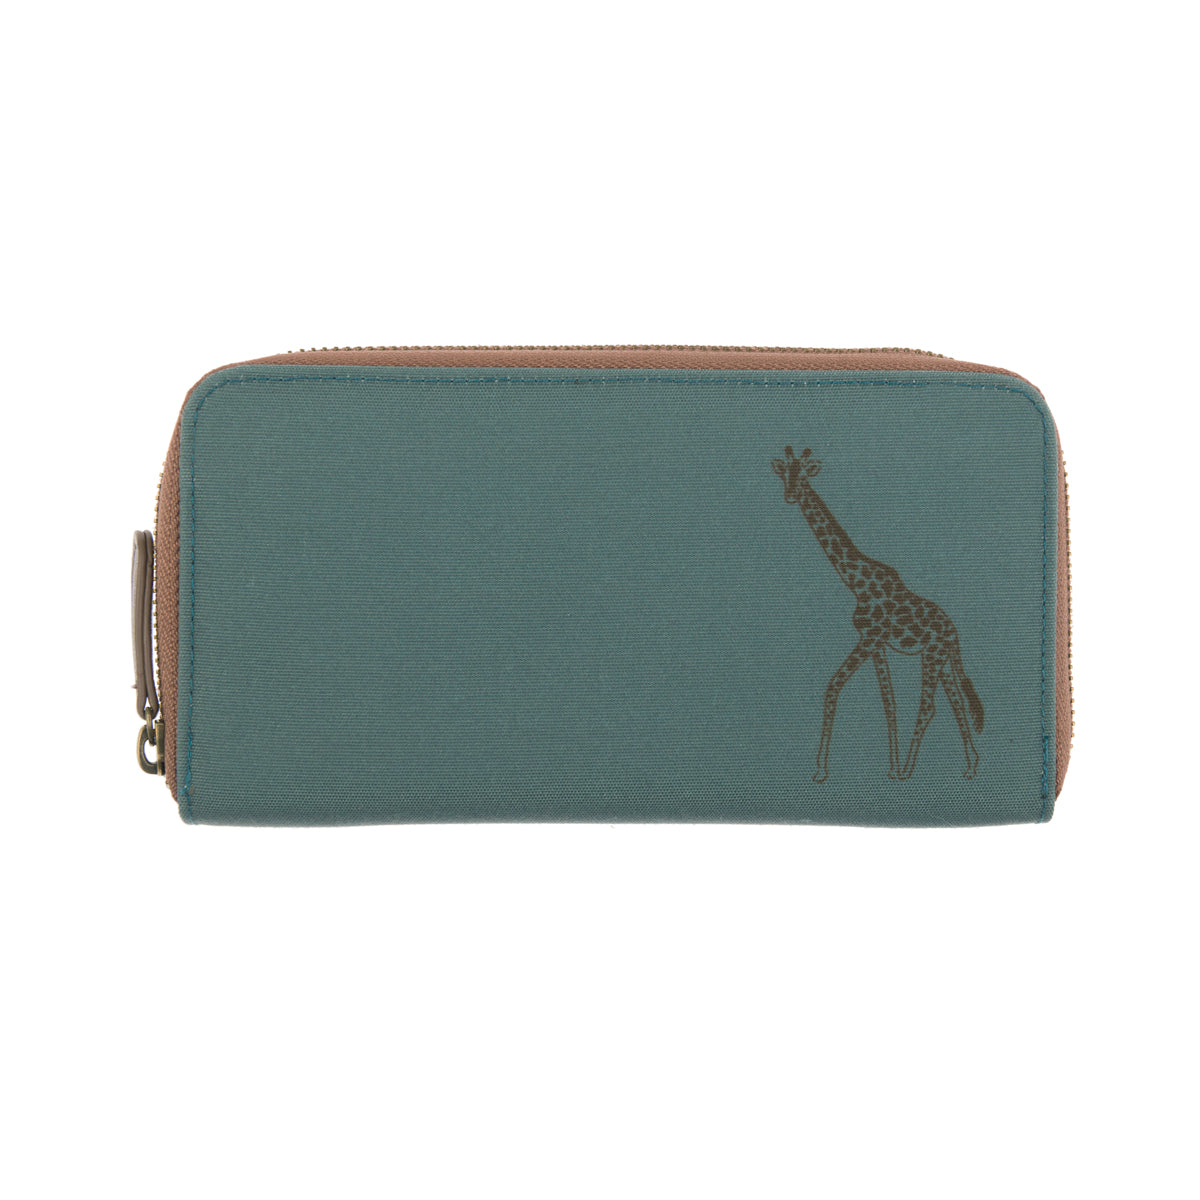 Giraffe Wallet Purse by Sophie Allport